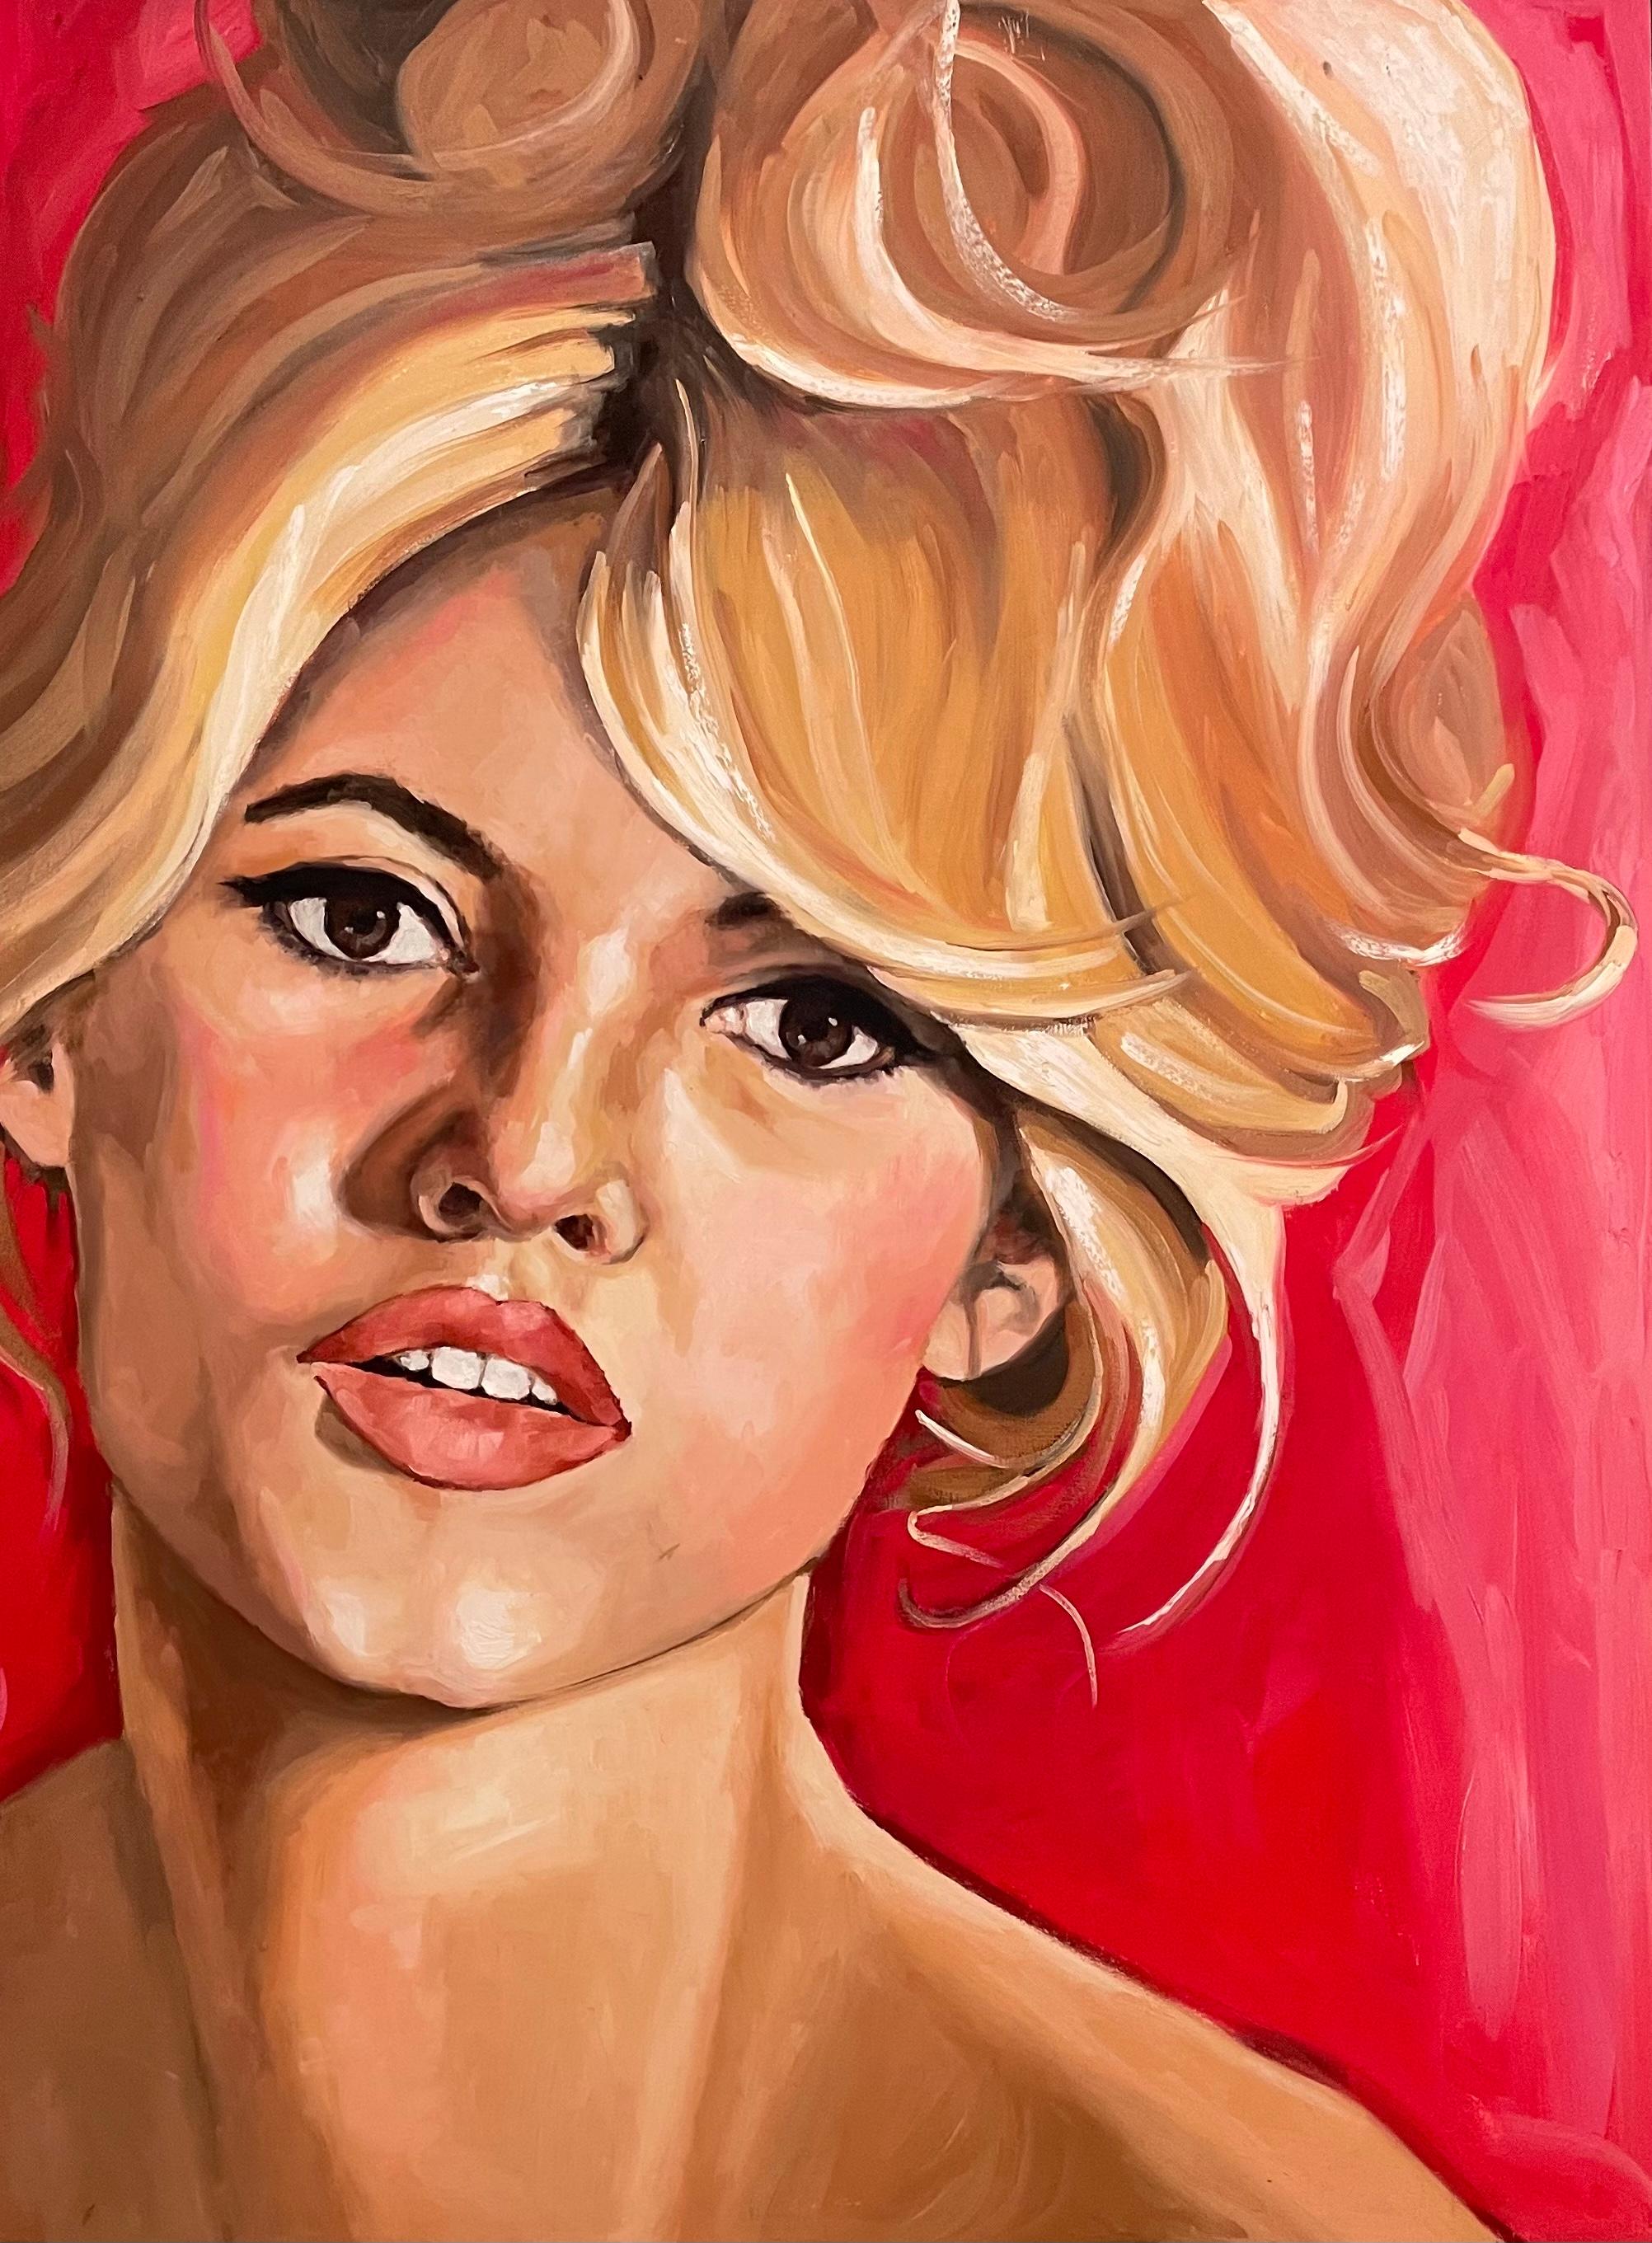 "Bardot", une huile sur panneau de 40 x 30 pouces de Shana Wilson, est un hommage contemporain à l'actrice française emblématique et sex-symbol, Brigitte Bardot. Wilson capture l'allure de Bardot grâce à un coup de pinceau assuré et à une palette